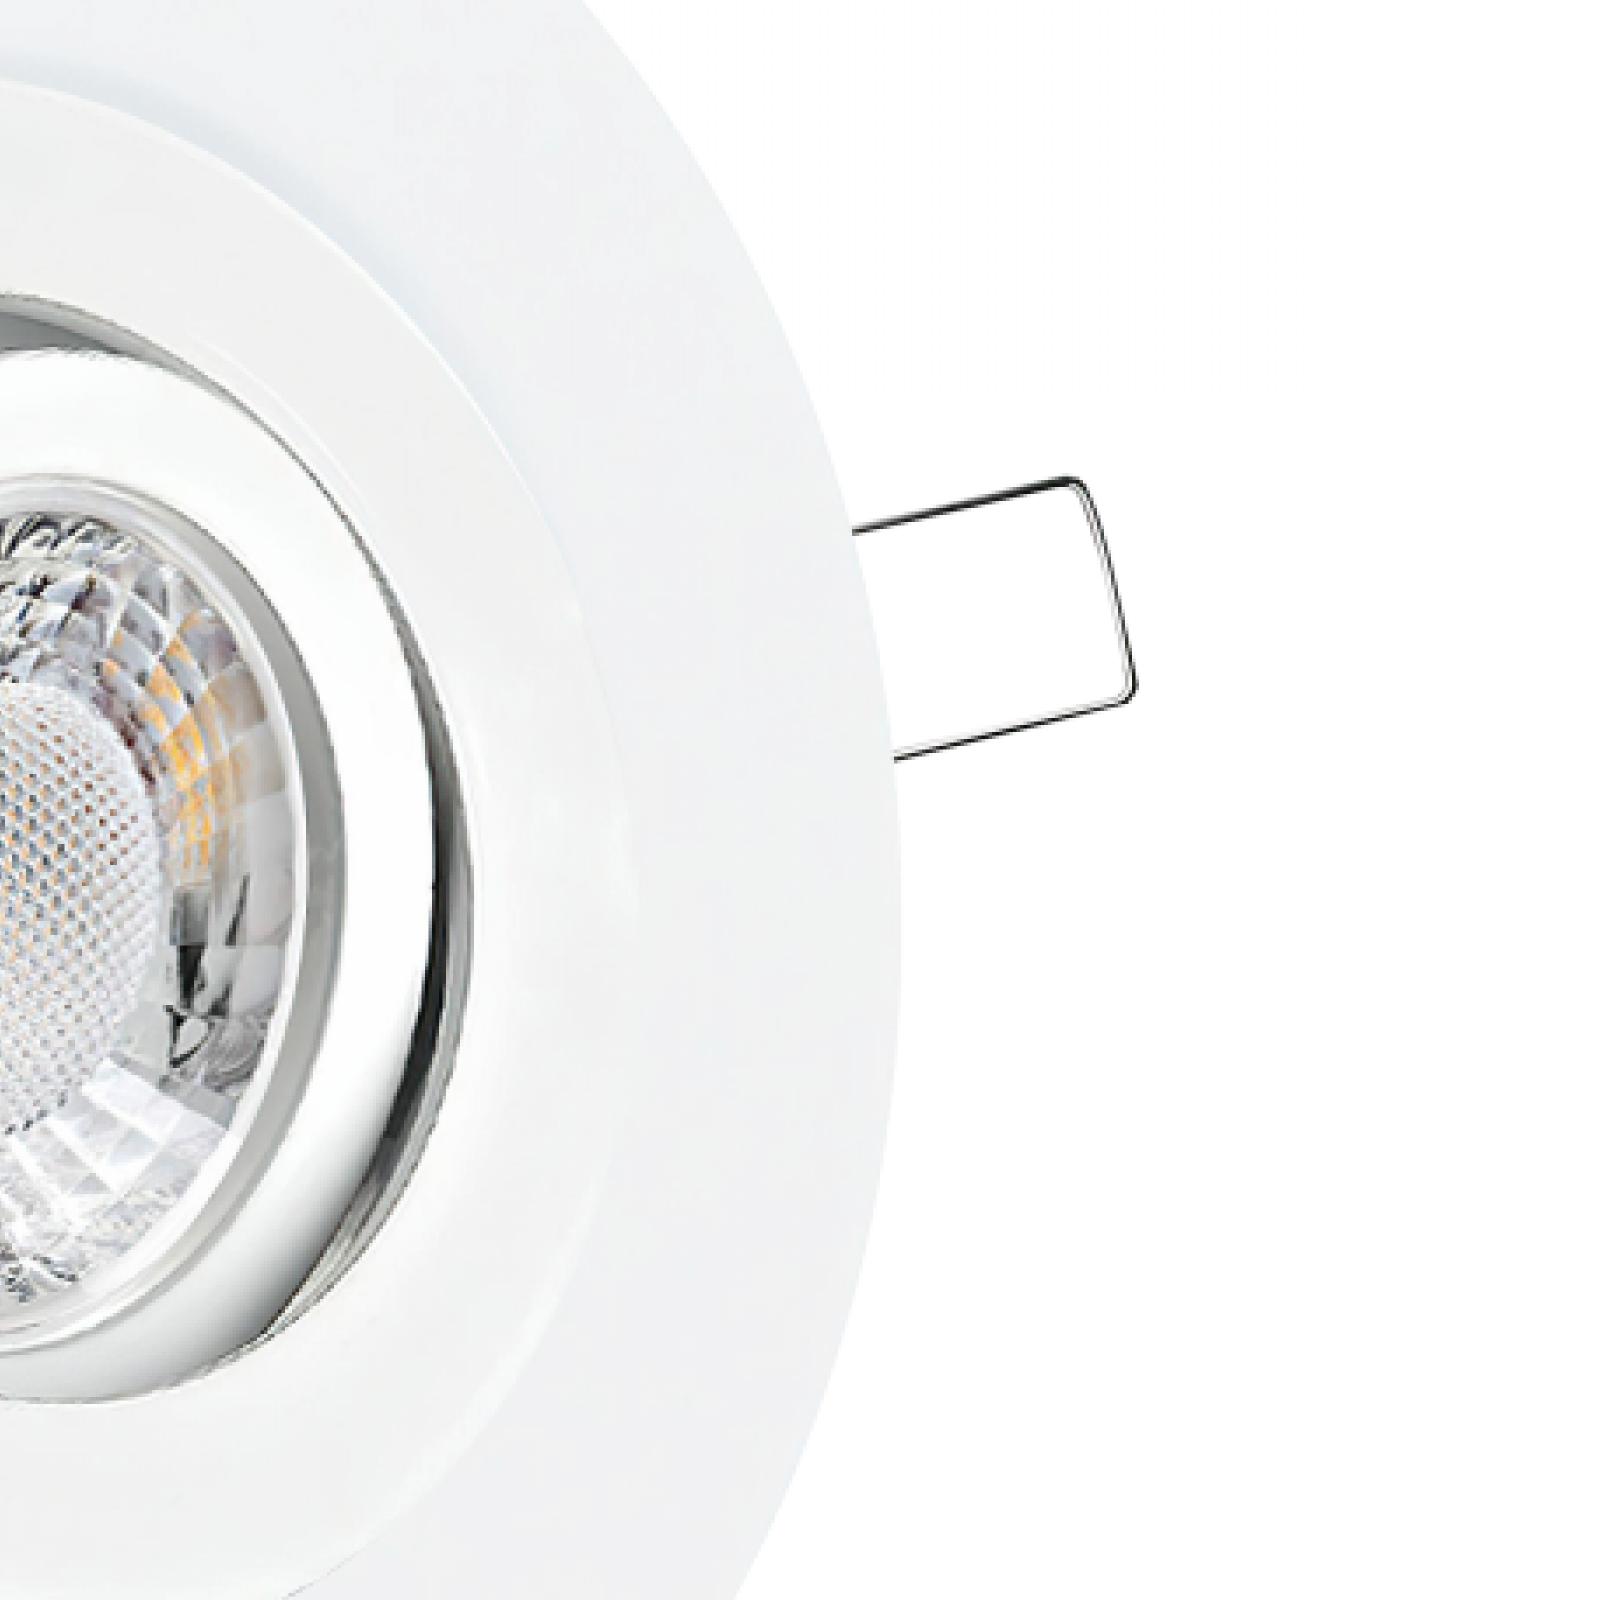 LED Einbaustrahler mit Ausgleichsblende für große Lochausschnitte weiß | Rund | schwenkbar | Lochmaß Ø 68mm - 135mm | Einbautiefe 64mm | GU10 230V 